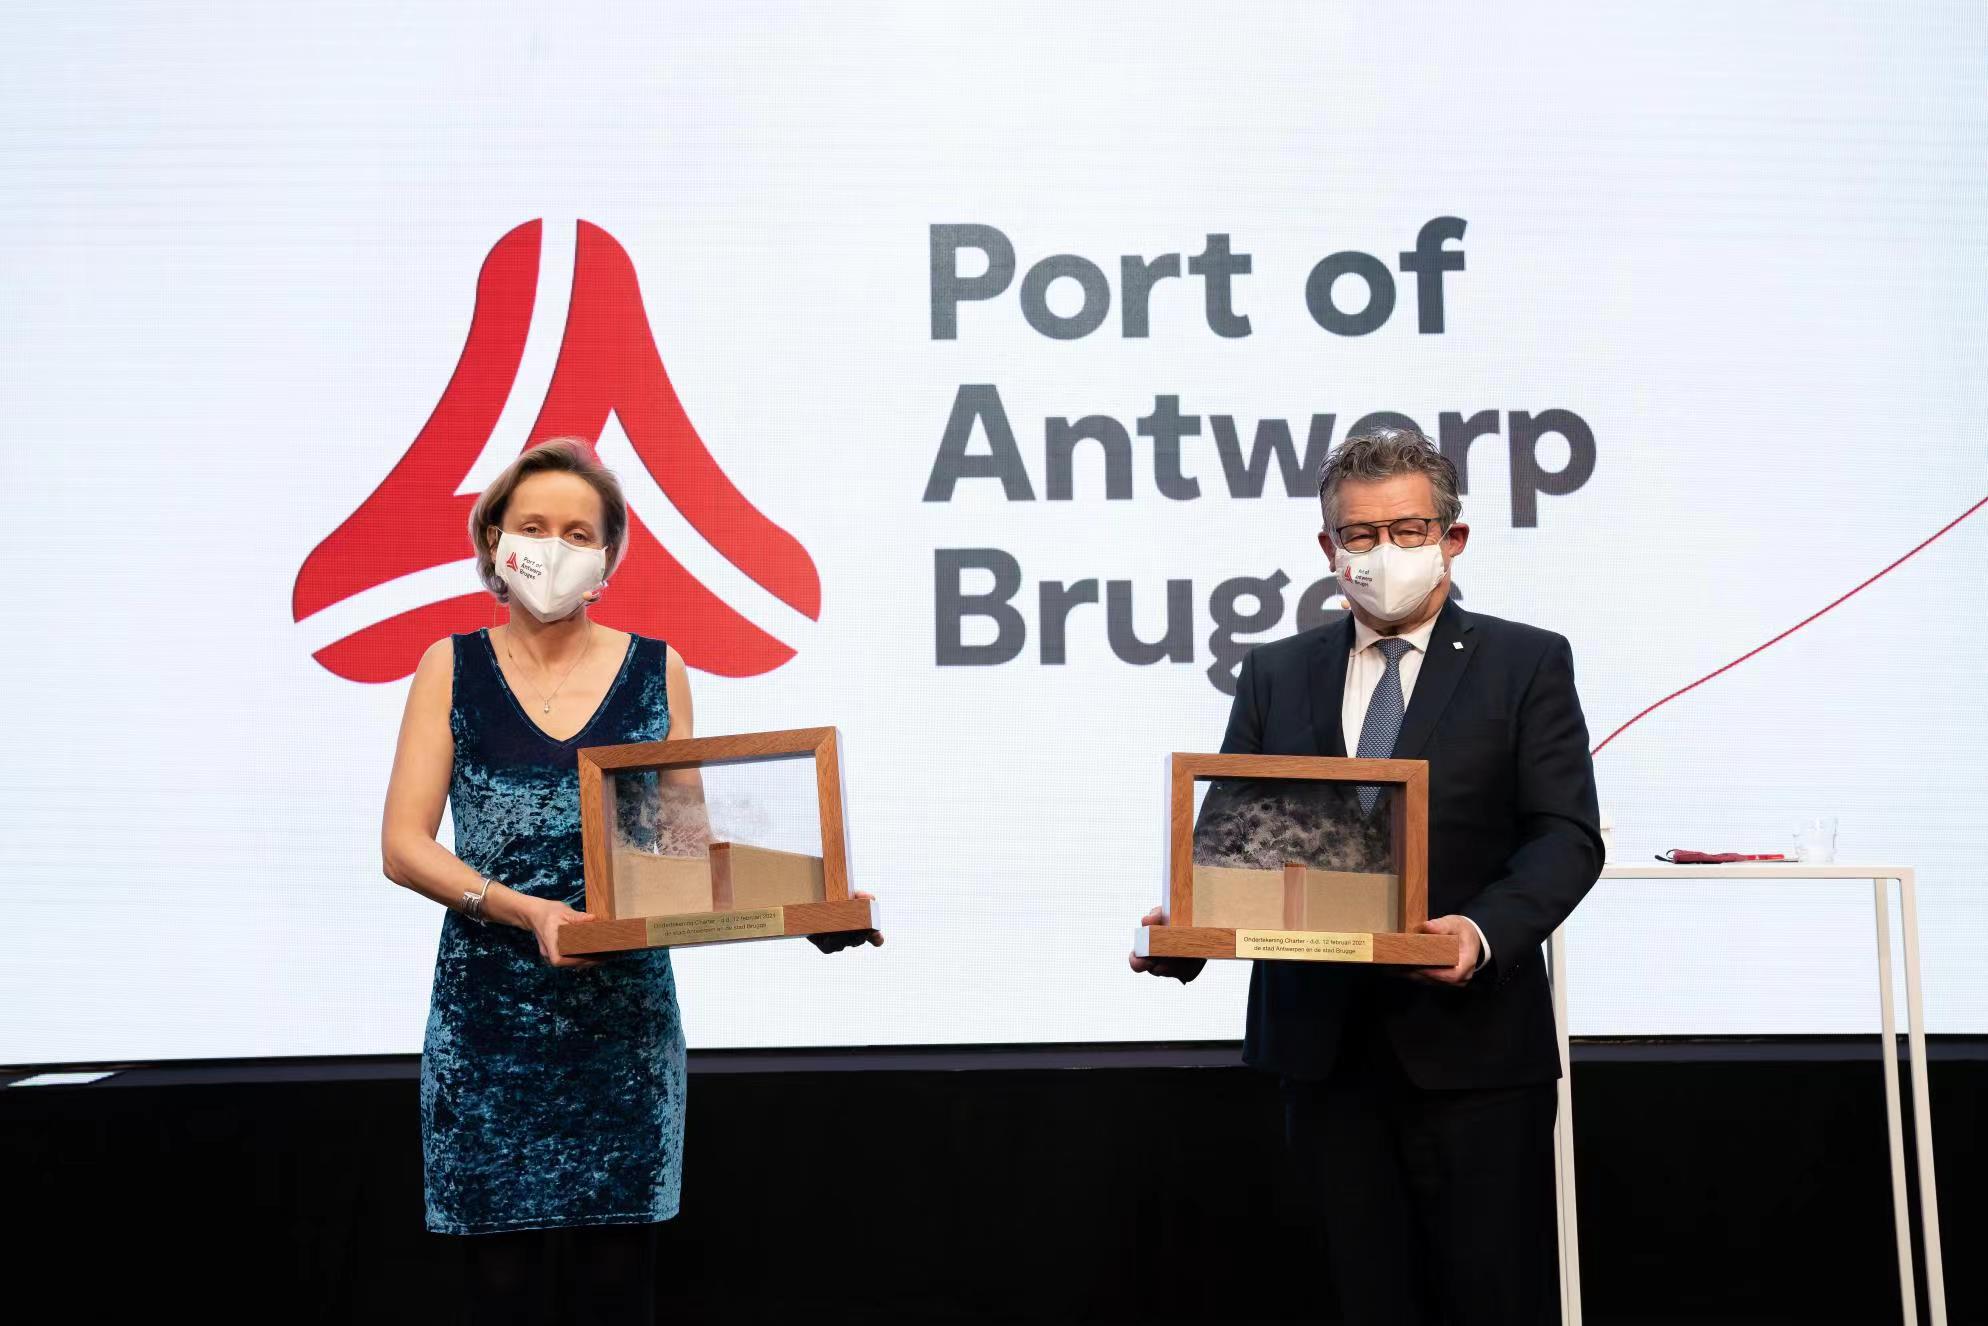  欧洲最大出口港  安特卫普-布鲁日港